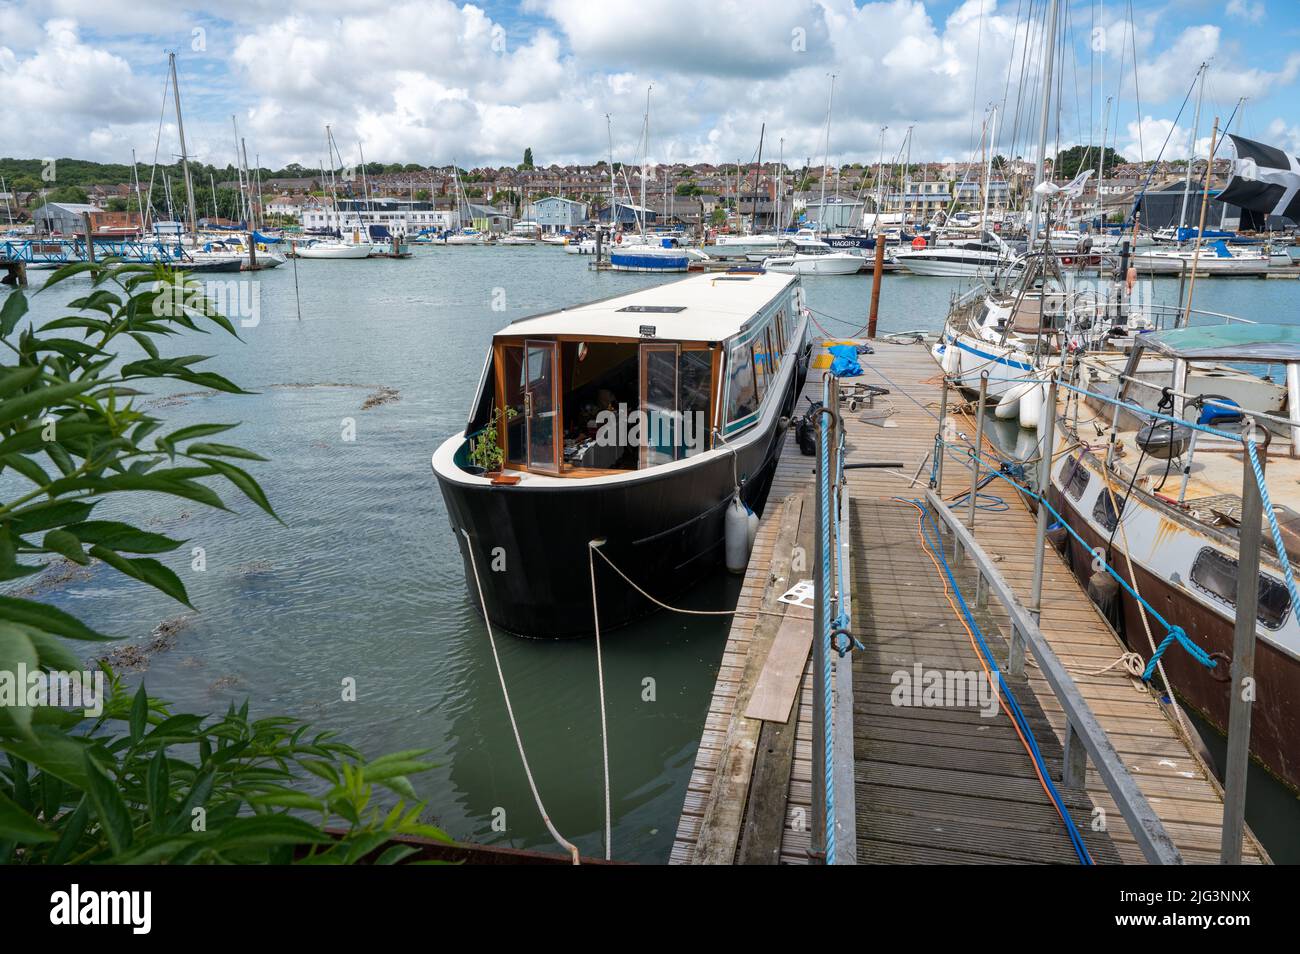 Probabilmente la prima barca a raggio largo costruita sull'isola di Wight ormeggiò nel porto mentre veniva completata dai costruttori Floating Ohm. Foto Stock